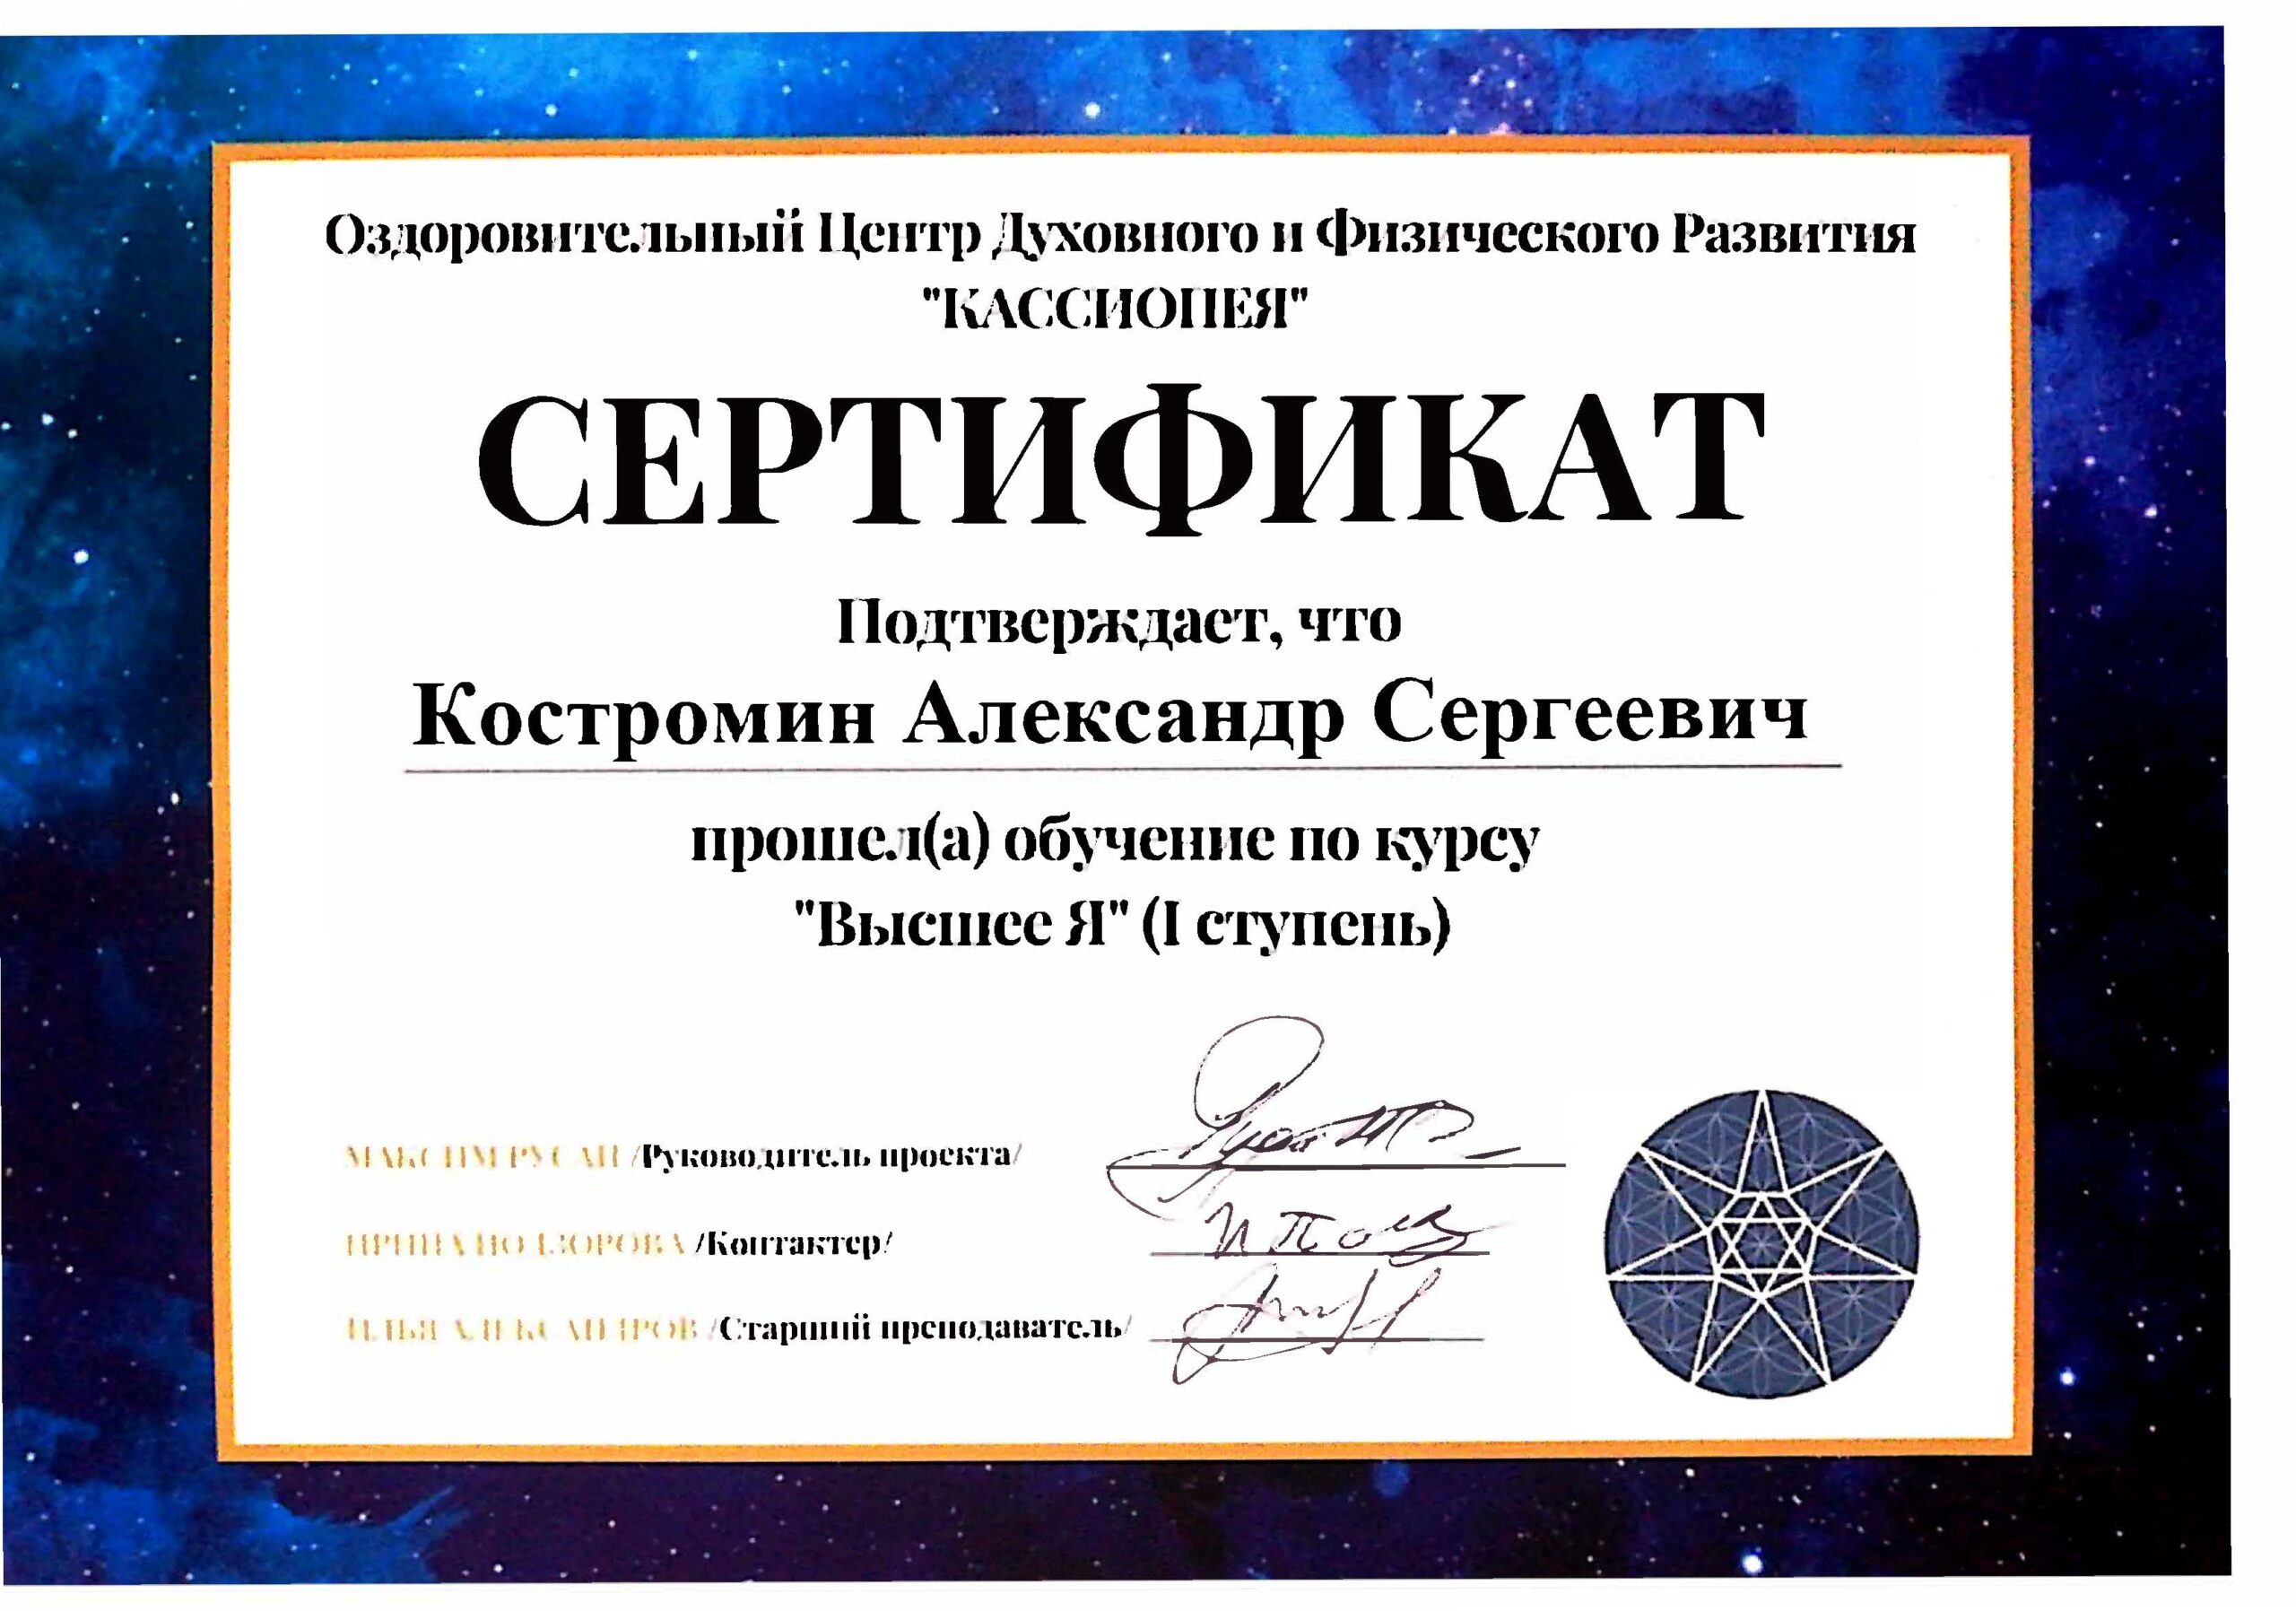 Сертификат. Высшее Я. Костромин А.С.